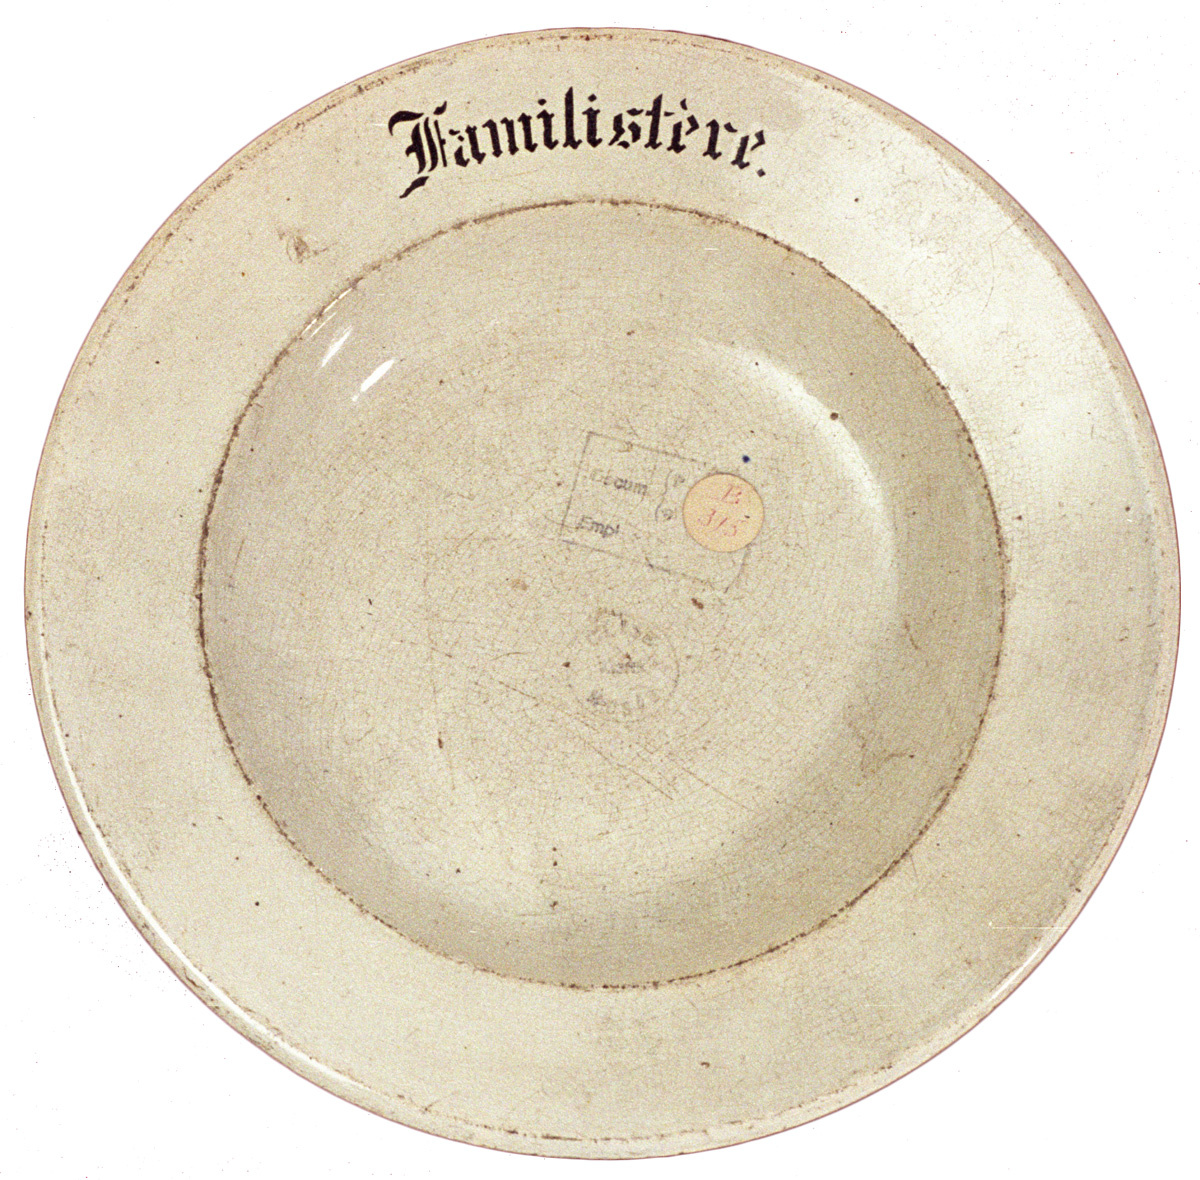 Cette ancienne assiette de la buvette des économats  porte le mot "Familistère".